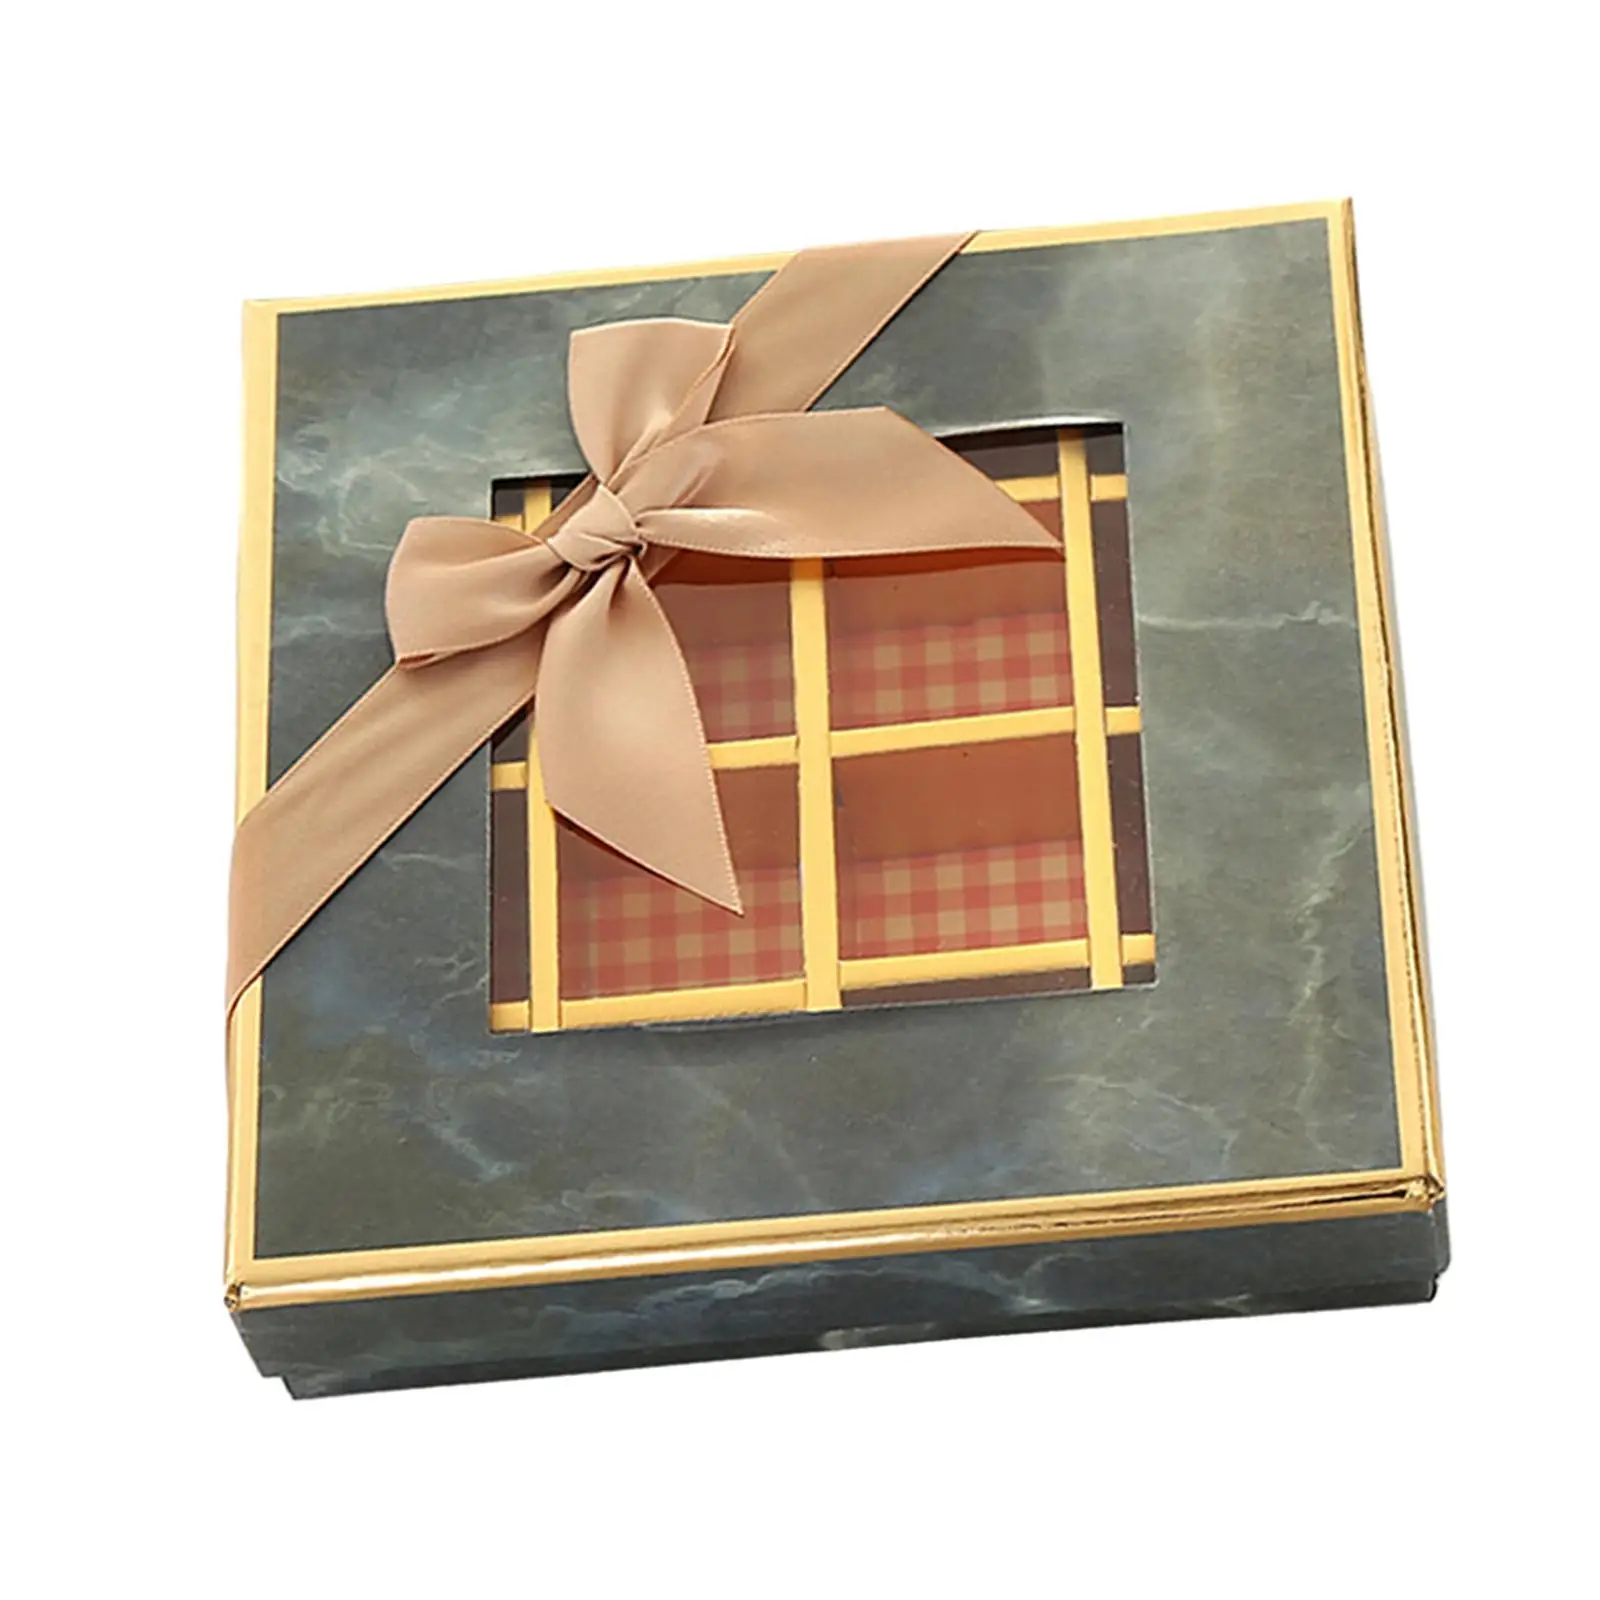 Csokoládé kijelző doboz 9 rácsos doboz ablakos doboz divatos könnyű ajándékcsomagoló doboz barátnőnek Barát karácsony - 2